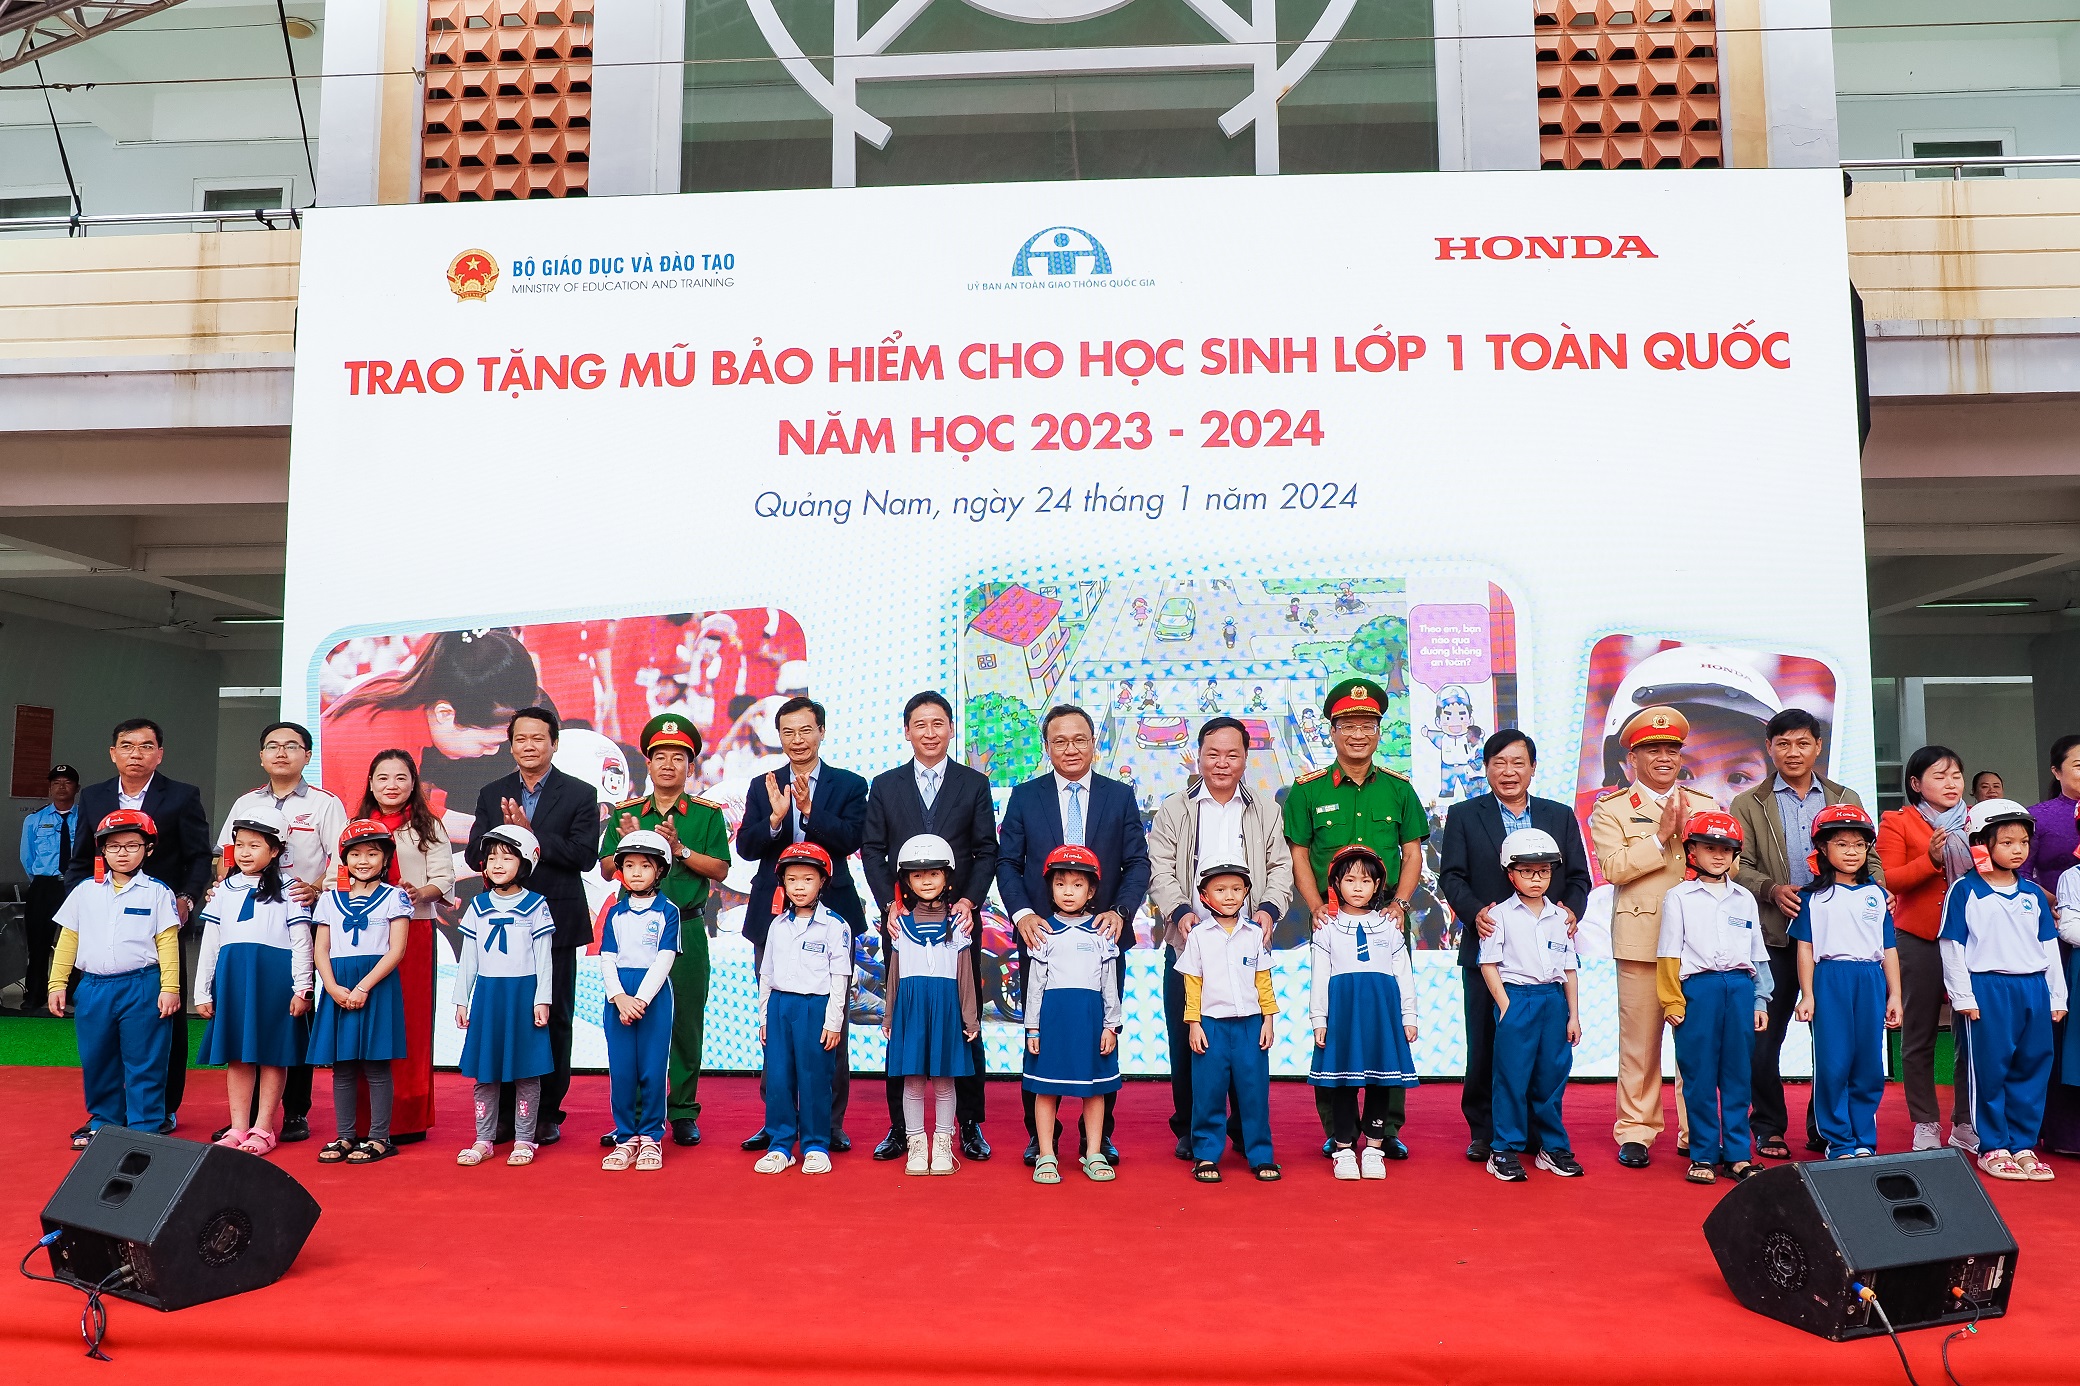 Honda Việt Nam tổng kết Trao tặng mũ bảo hiểm cho học sinh lớp Một trên toàn quốc năm học 2023 – 2024 4-cac-dai-bieu-trao-tang-mu-bao-hiem-cho-cac-em-hoc-sinh-lop-mot-truong-tieu-hoc-vo-thi-sau.jpg